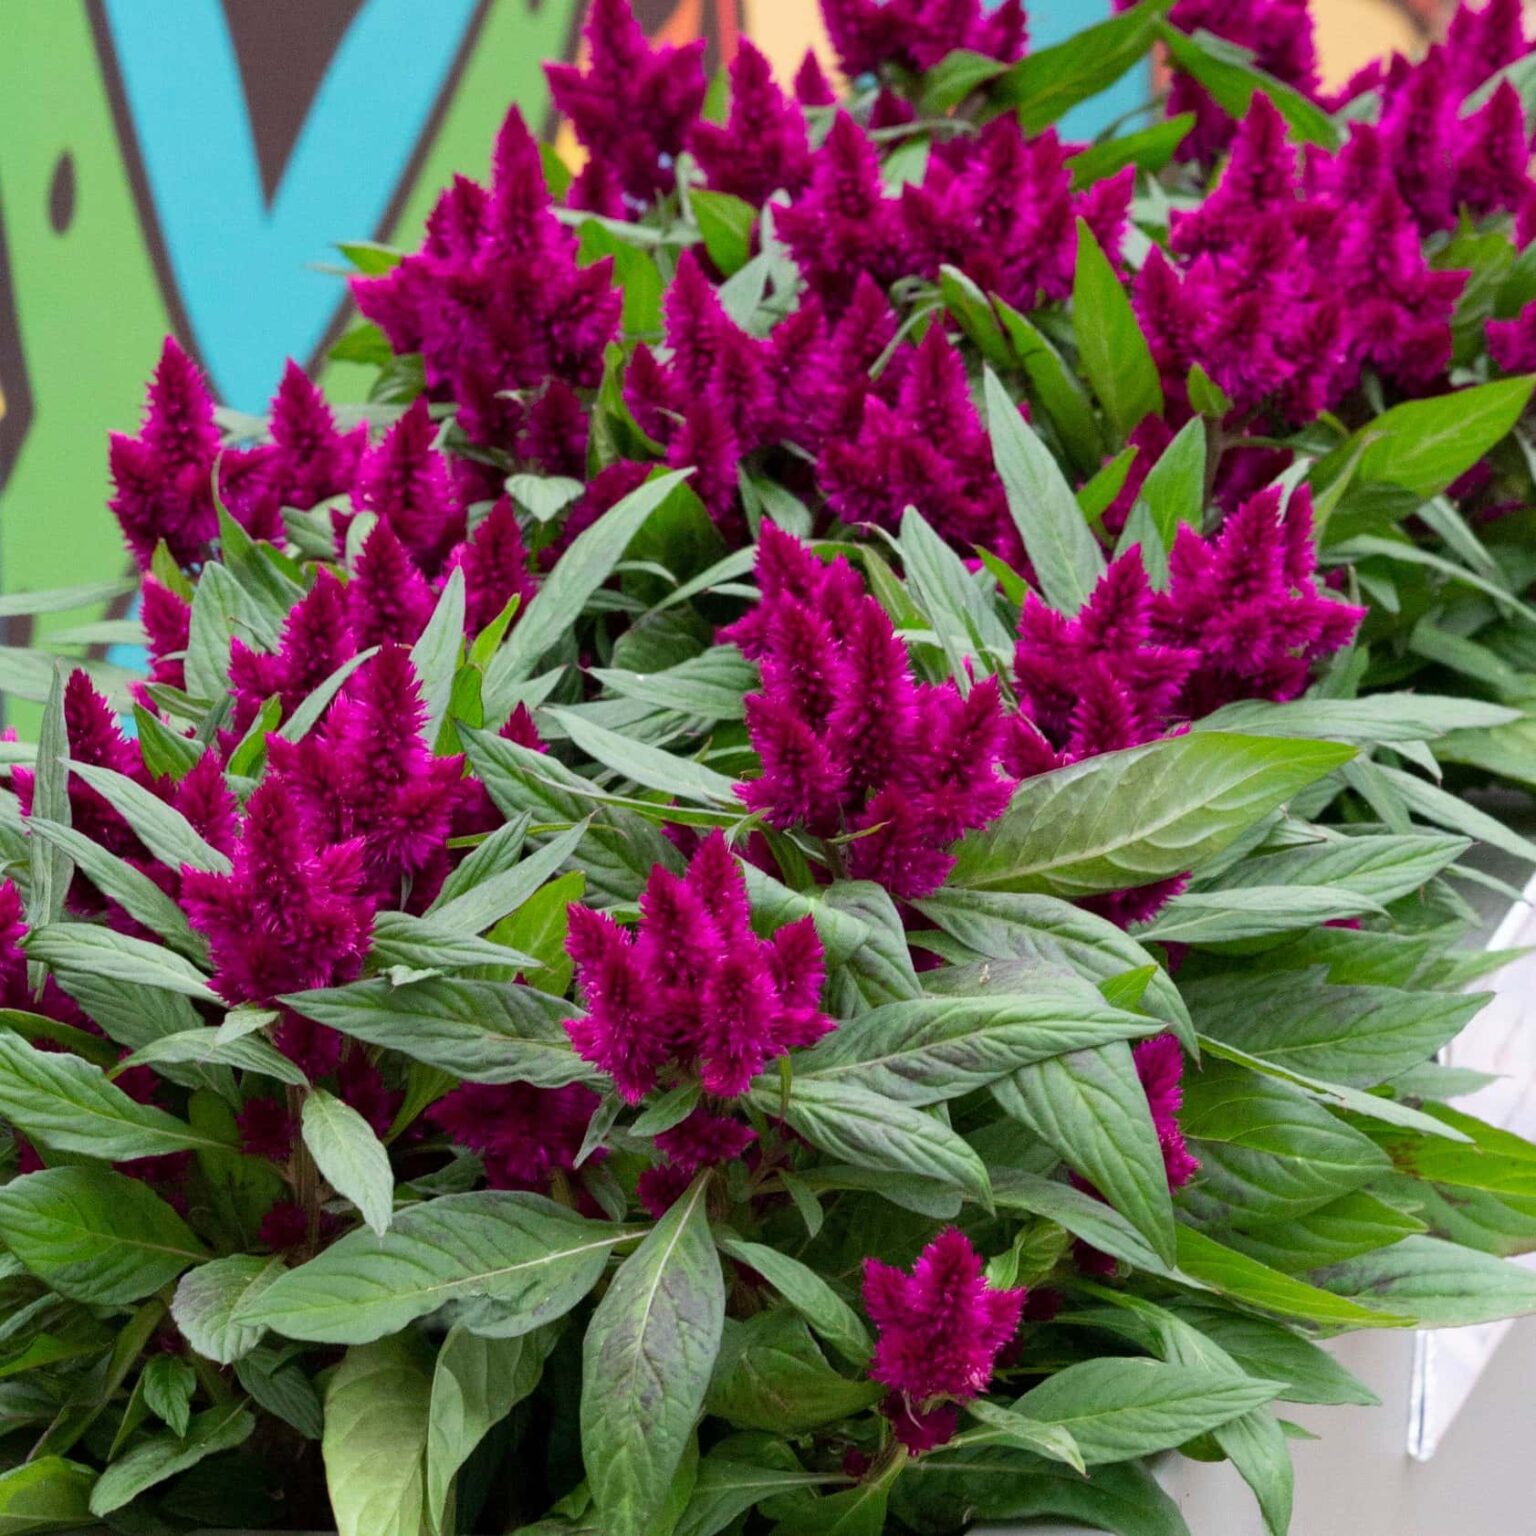 celosia-intenz-dark-purple-5-pot-hello-hello-plants-garden-supplies